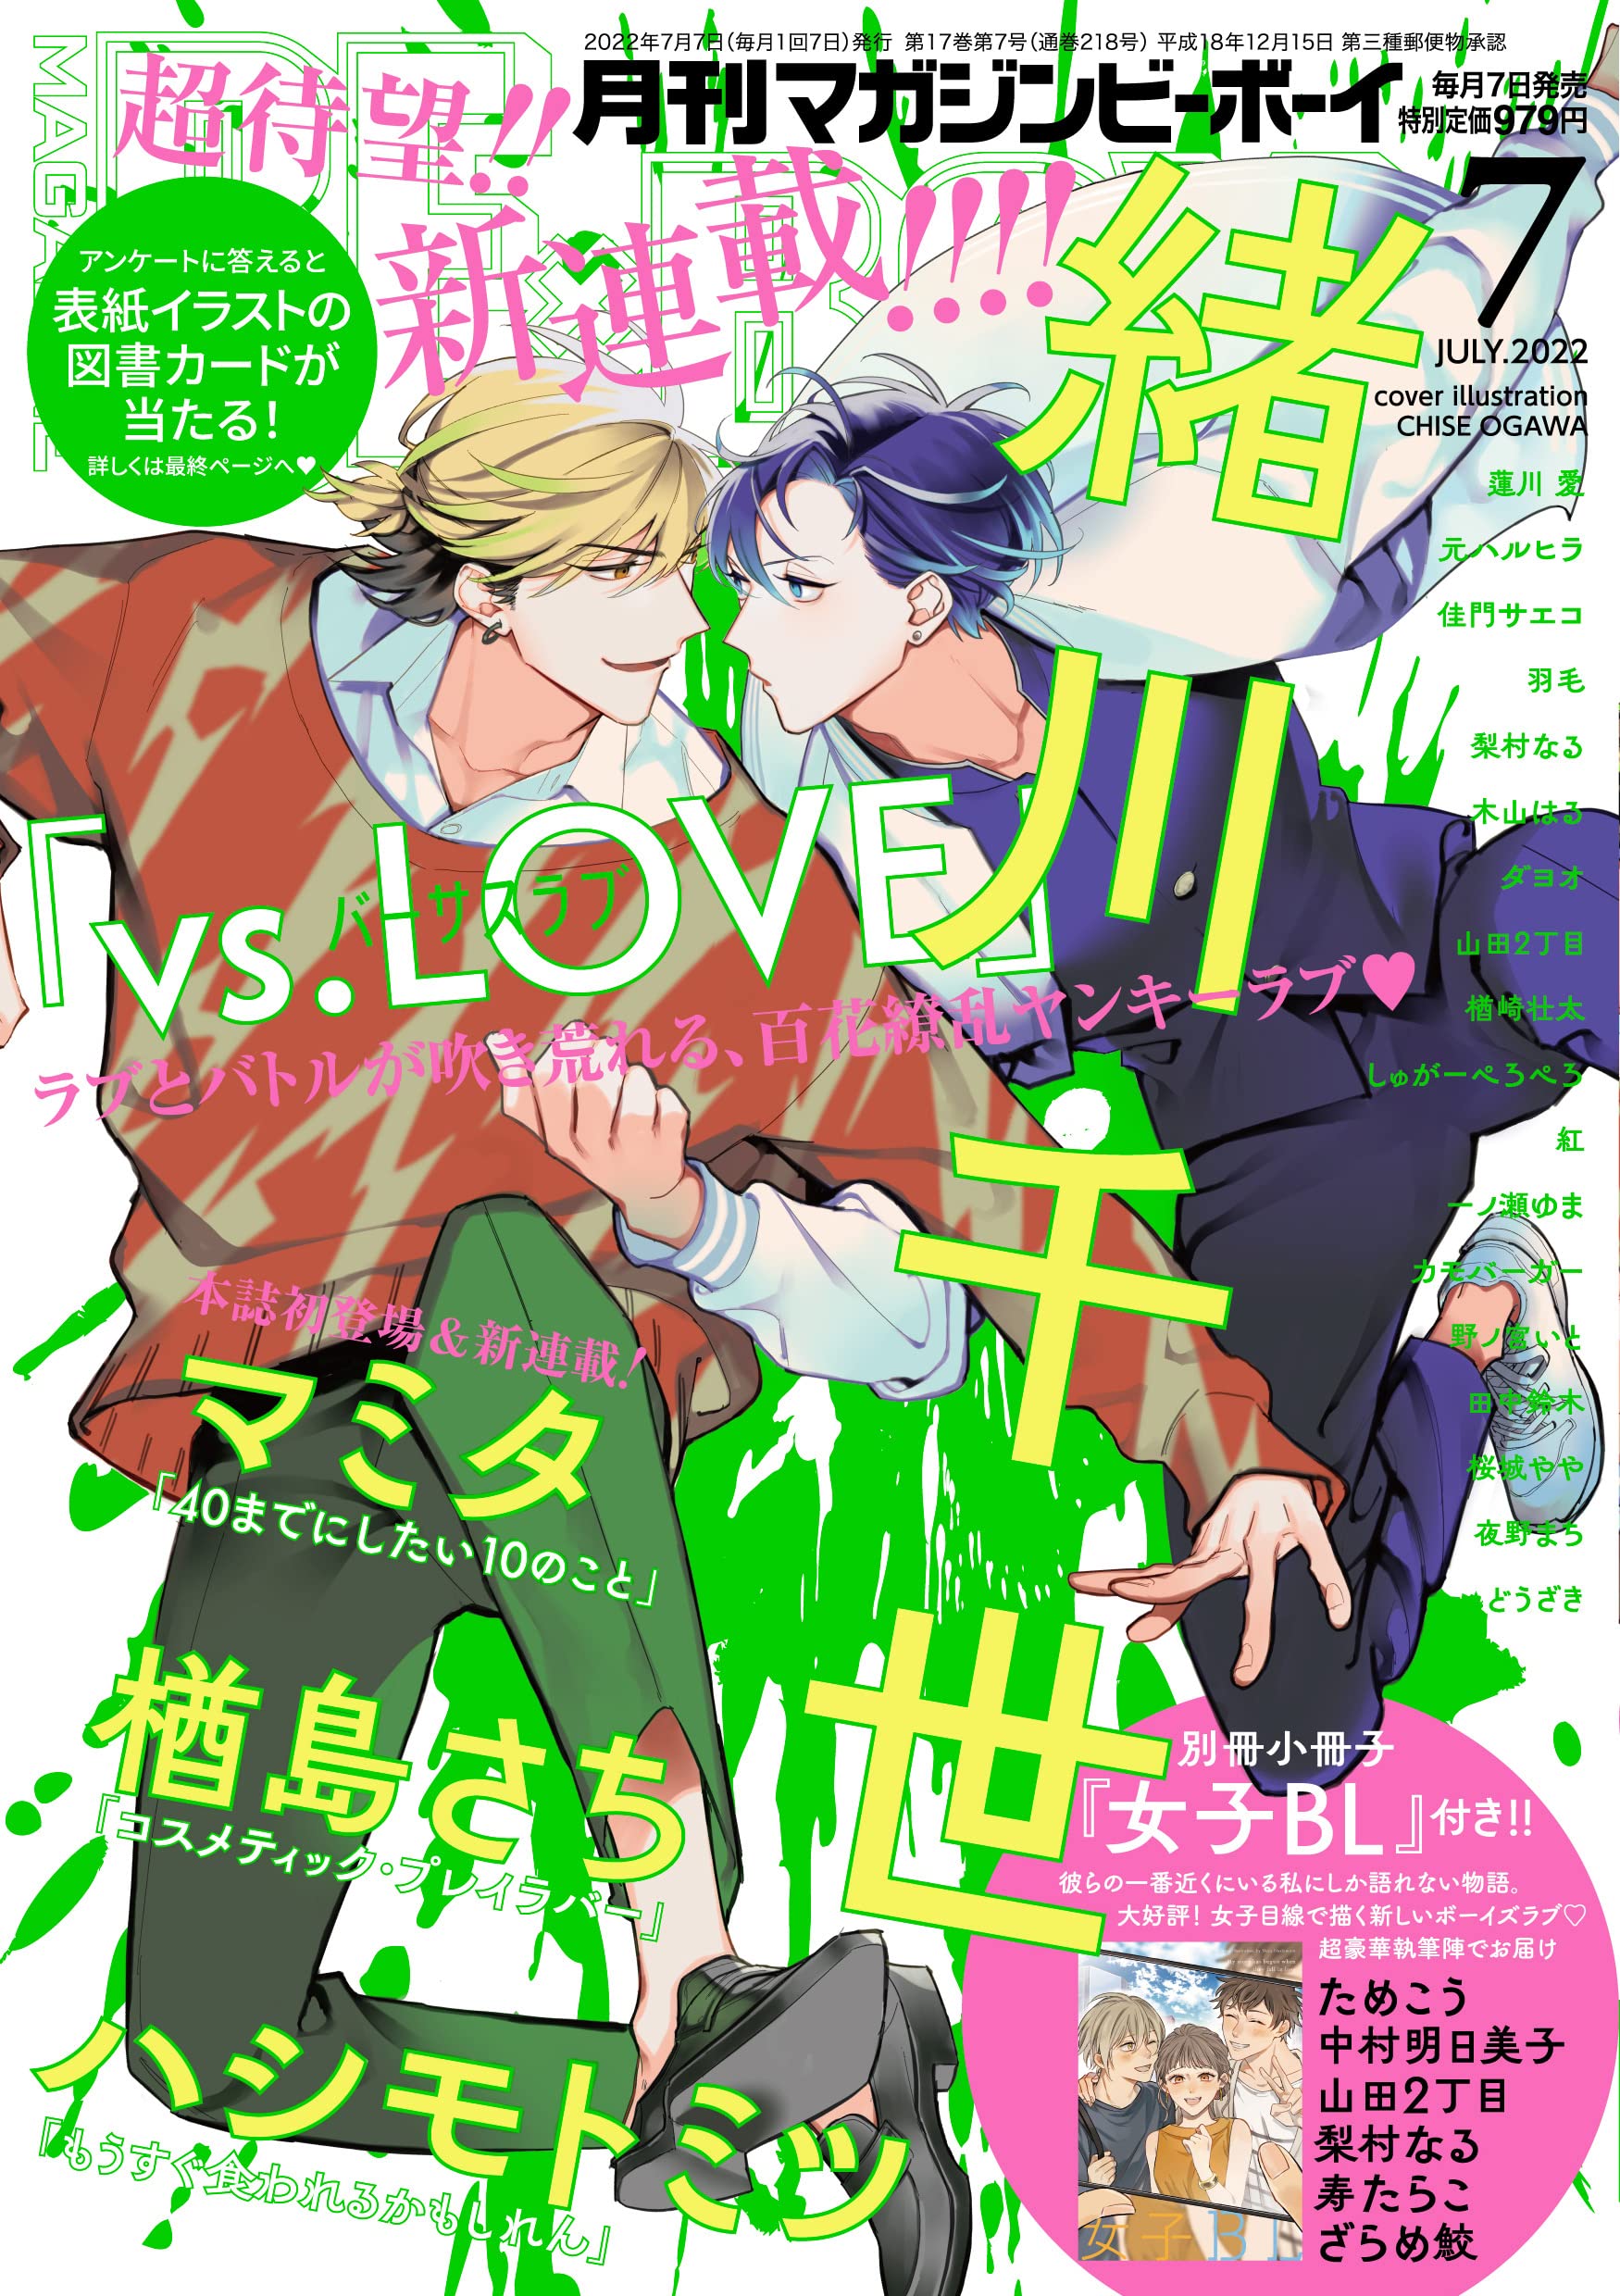 Boys Love (Yaoi) Magazine - MAGAZINE BE×BOY (MAGAZINE BE×BOY (マガジンビーボーイ) 2022年07月号[雑誌]) / Hasukawa Ai & Tanaka Suzuki & Sakuragi Yaya & Ogawa Chise & 紅